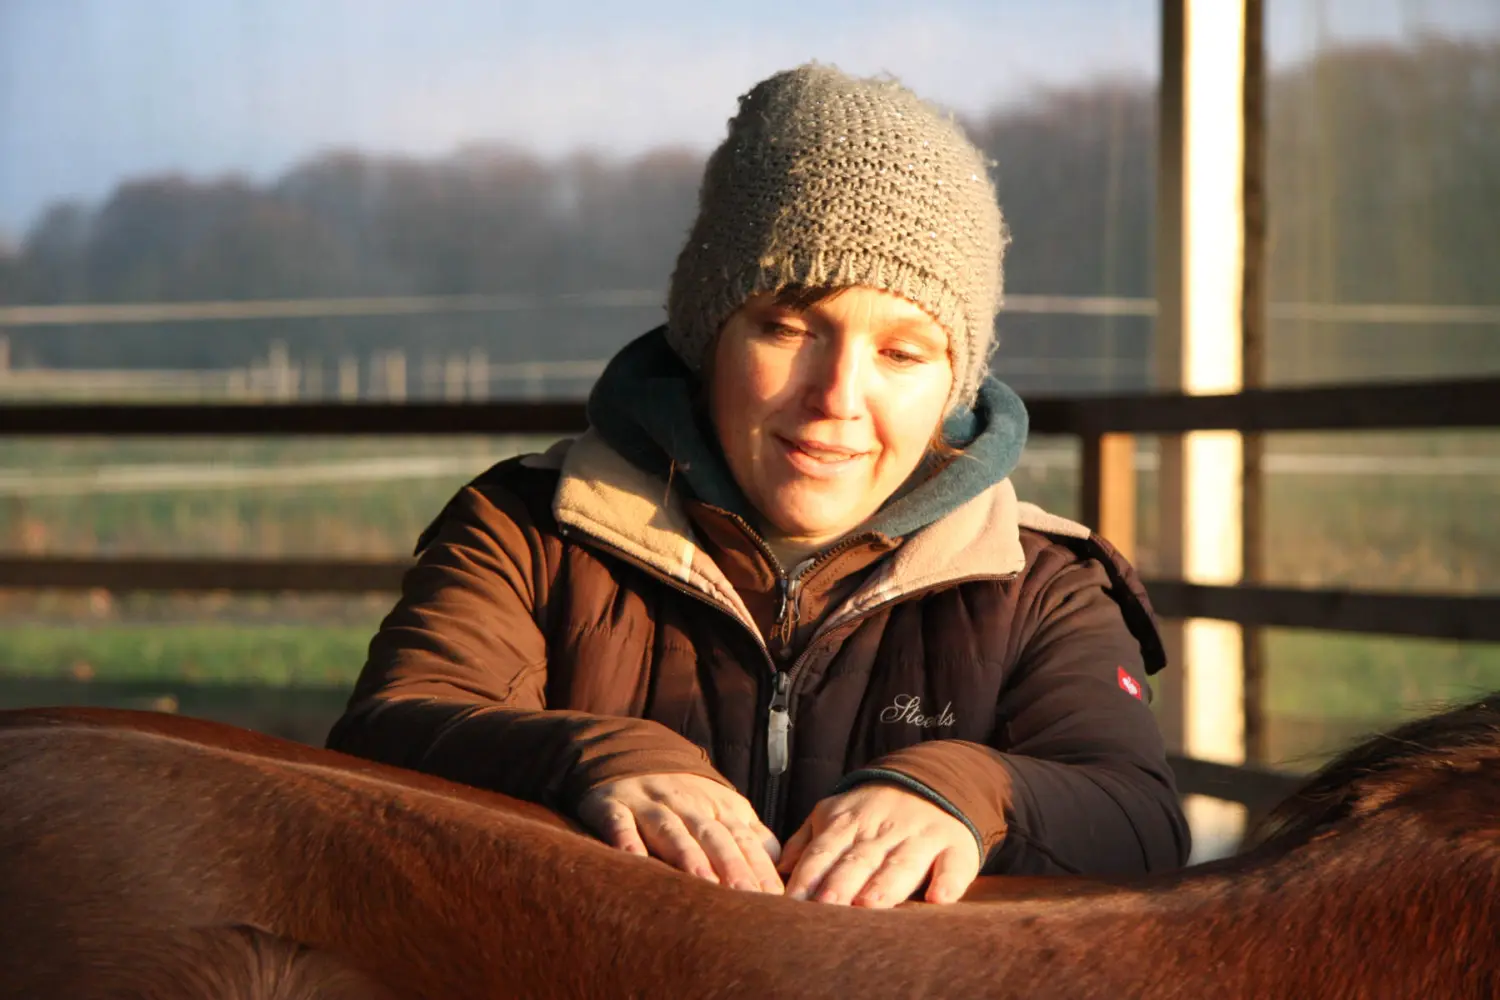 Frau mit Pferd Jana Vagedes Osteopathie & Physiotherapie für Pferde